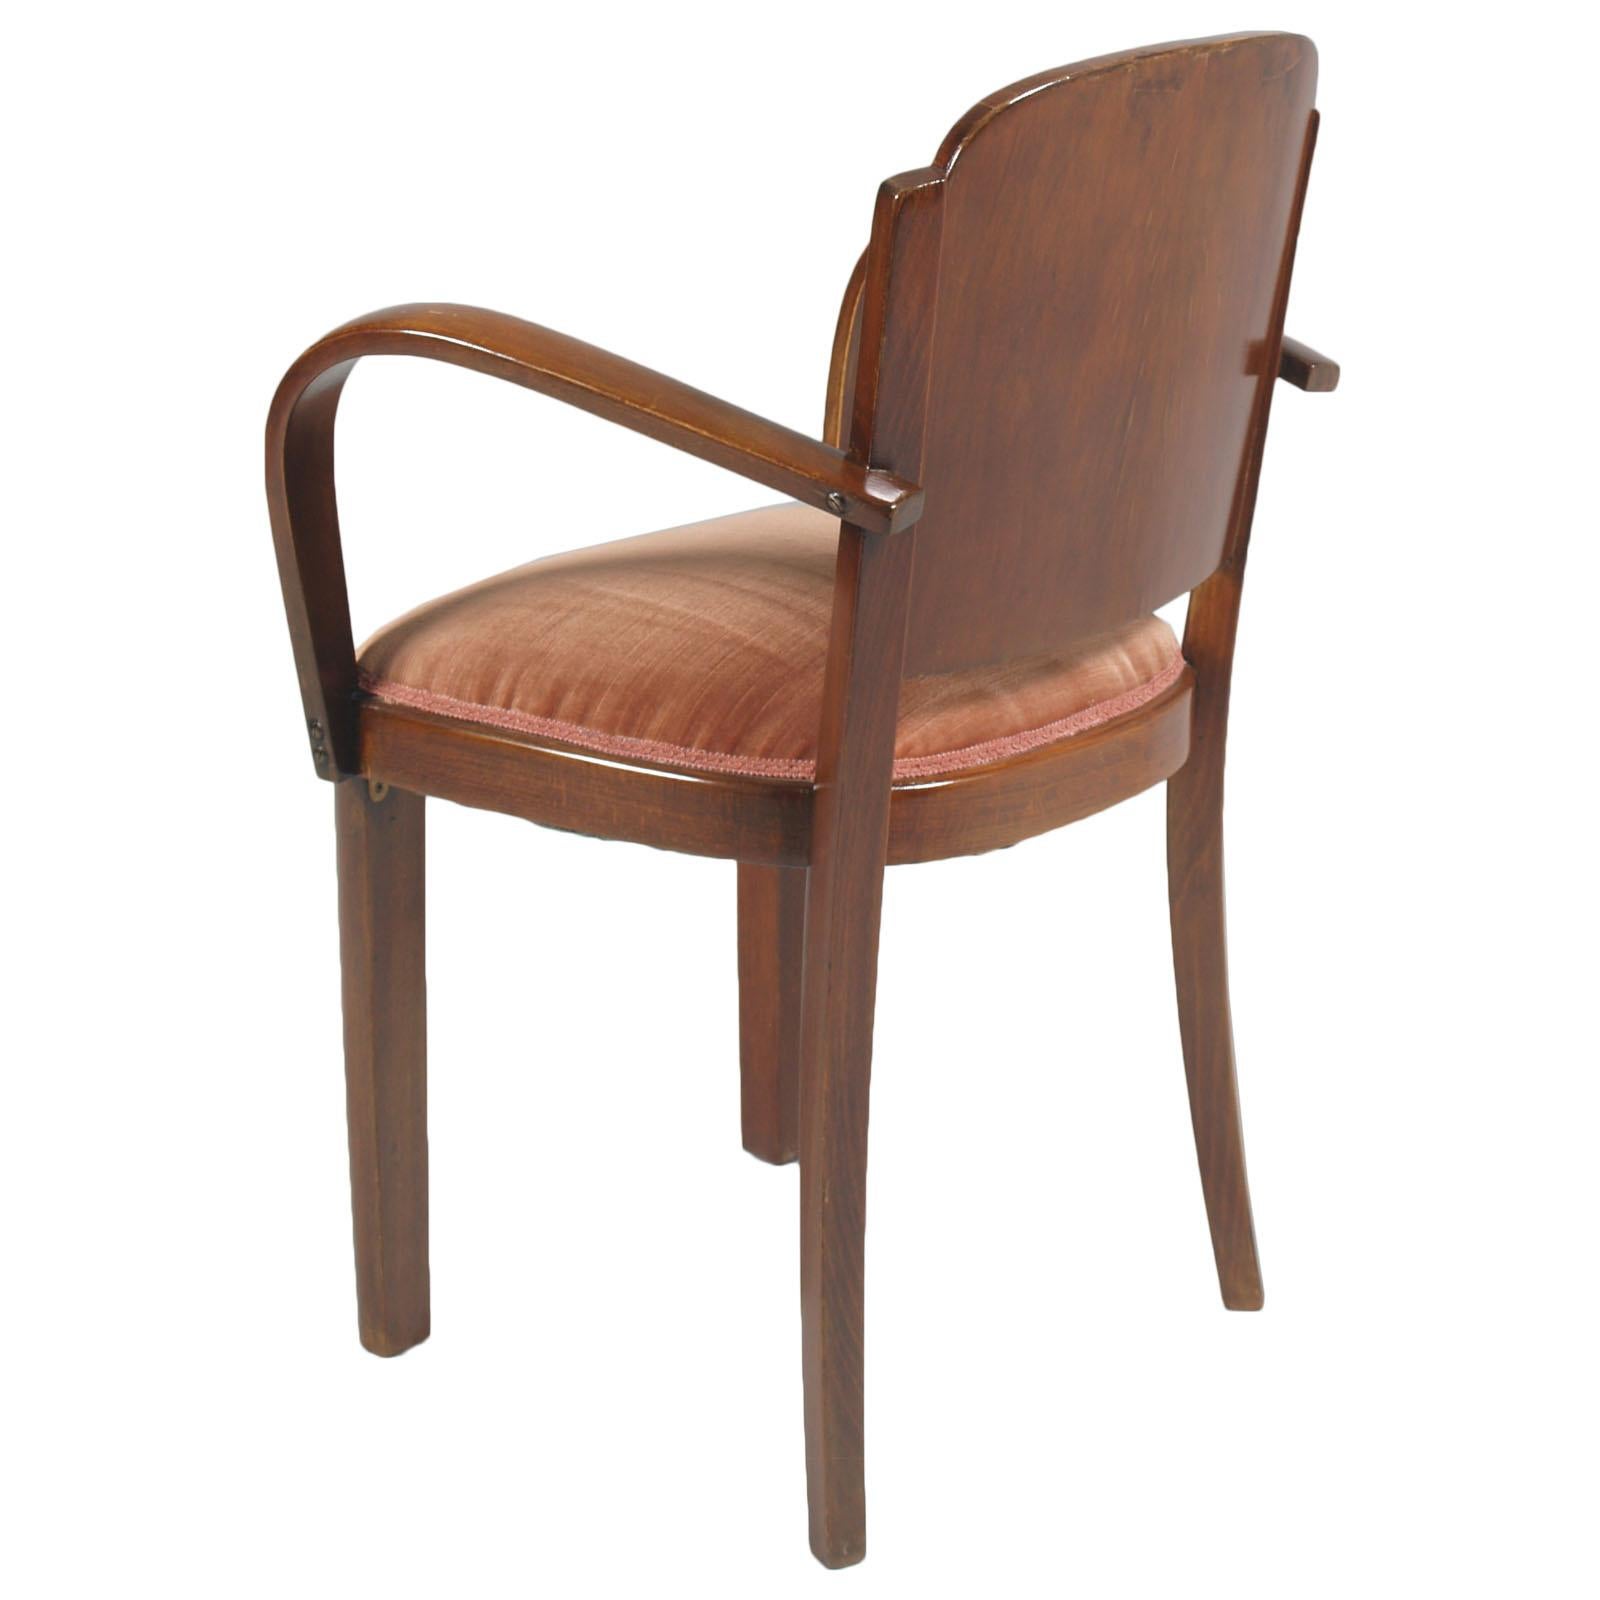 Italian 1920s Art Deco Bridge Chairs, All Original Velvet Upholstered, in Walnut For Sale 3